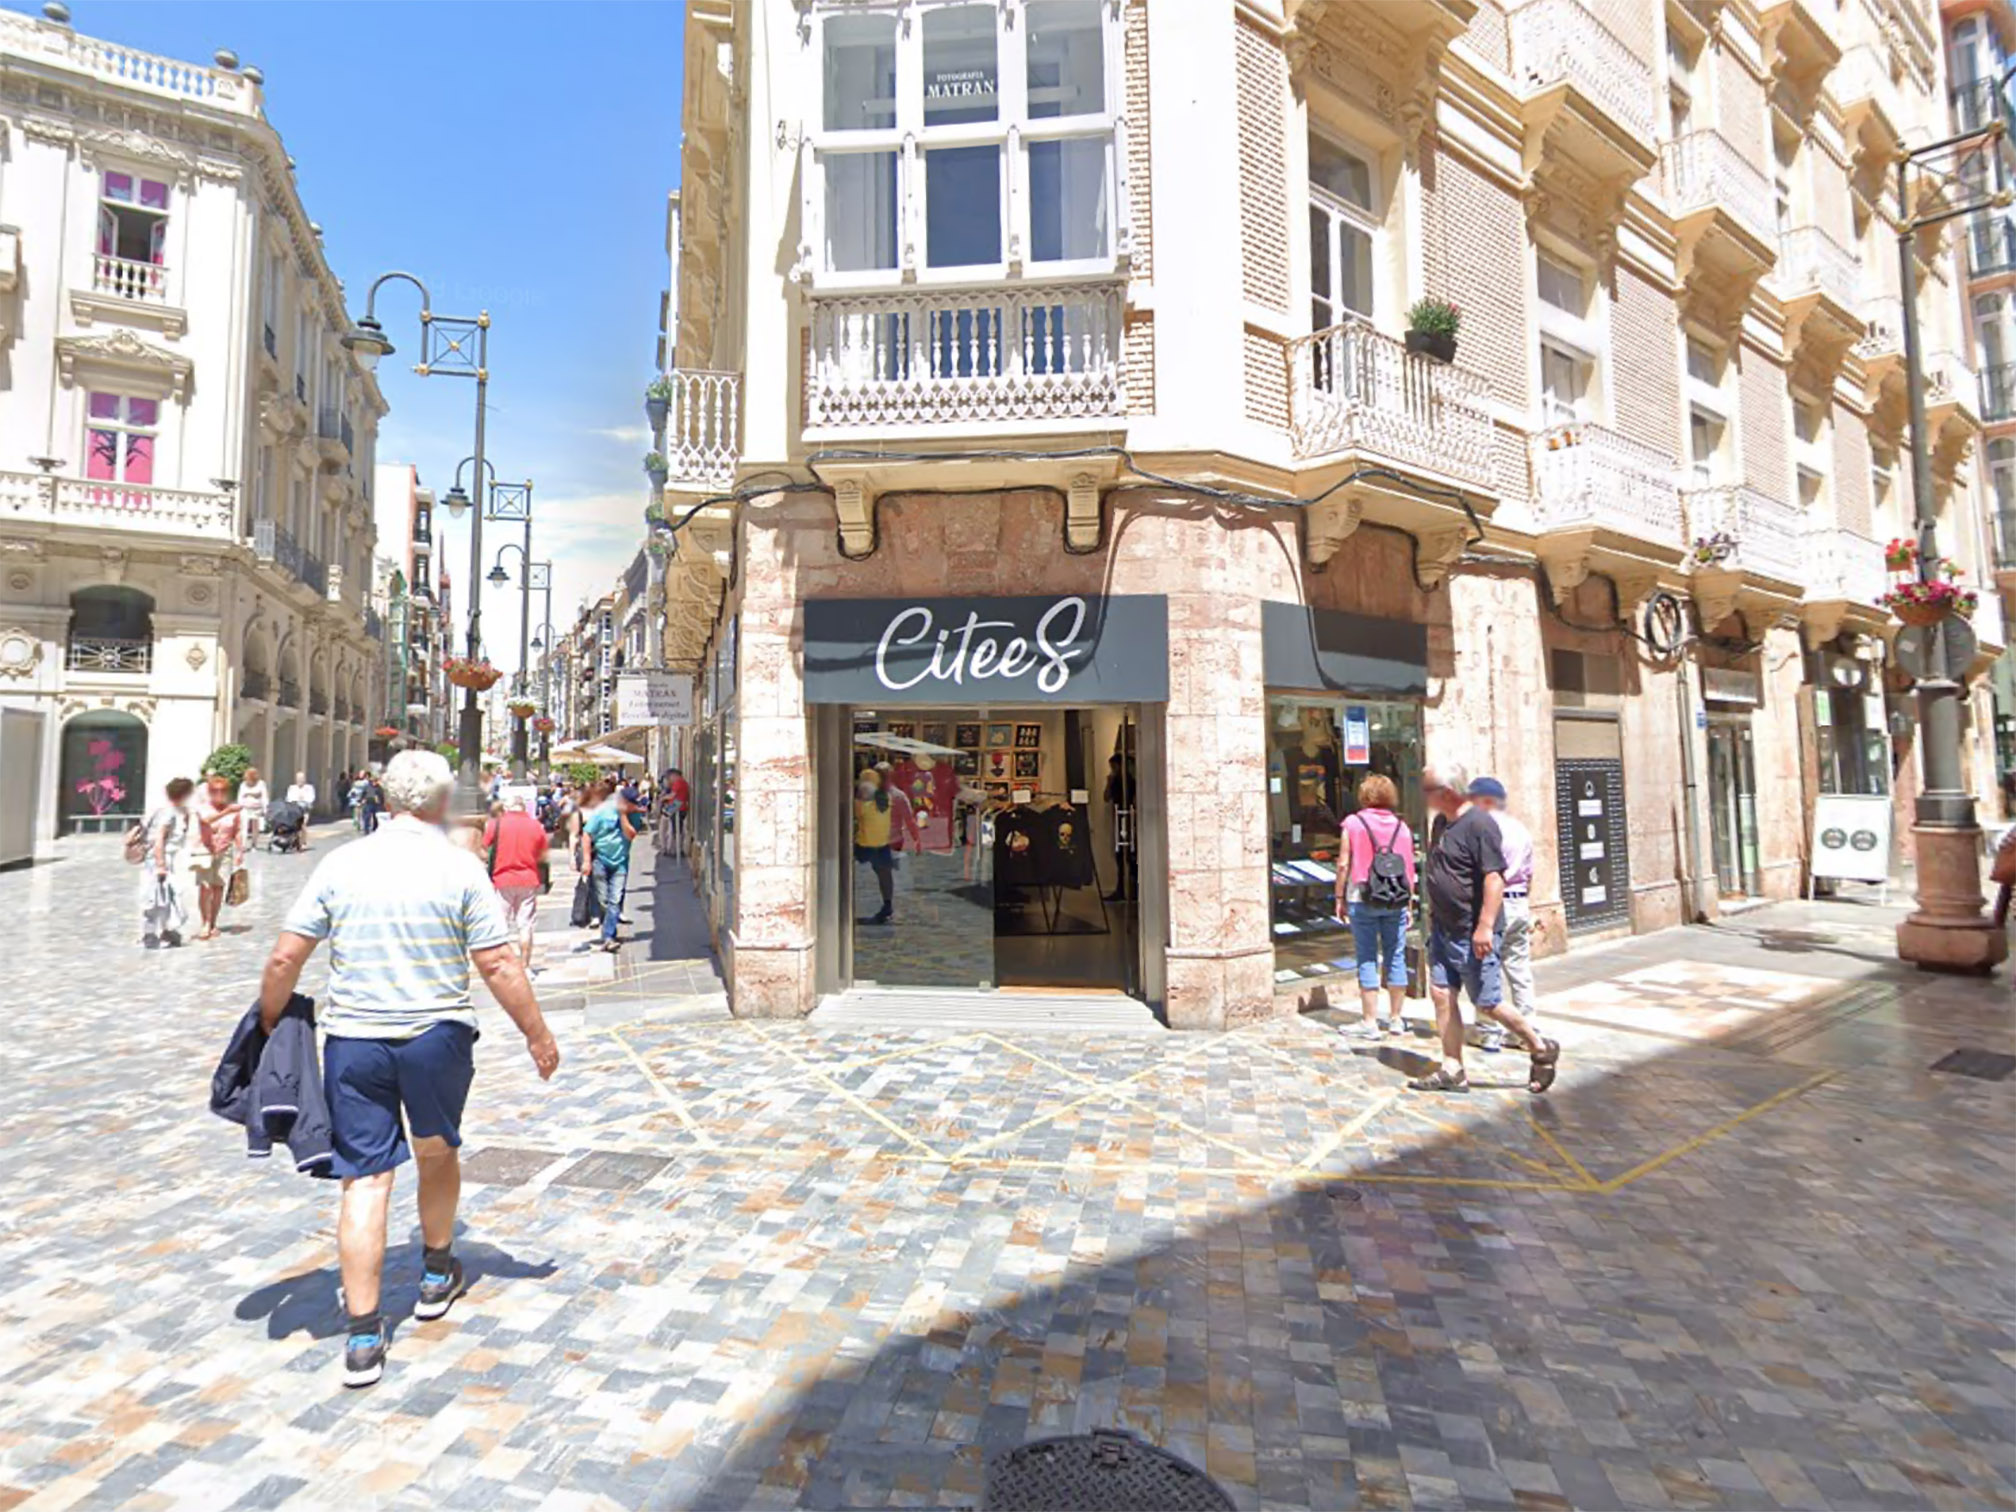 La tienda de camisetas Citees abre nueva un nuevo local comercial en el centro de Cartagena